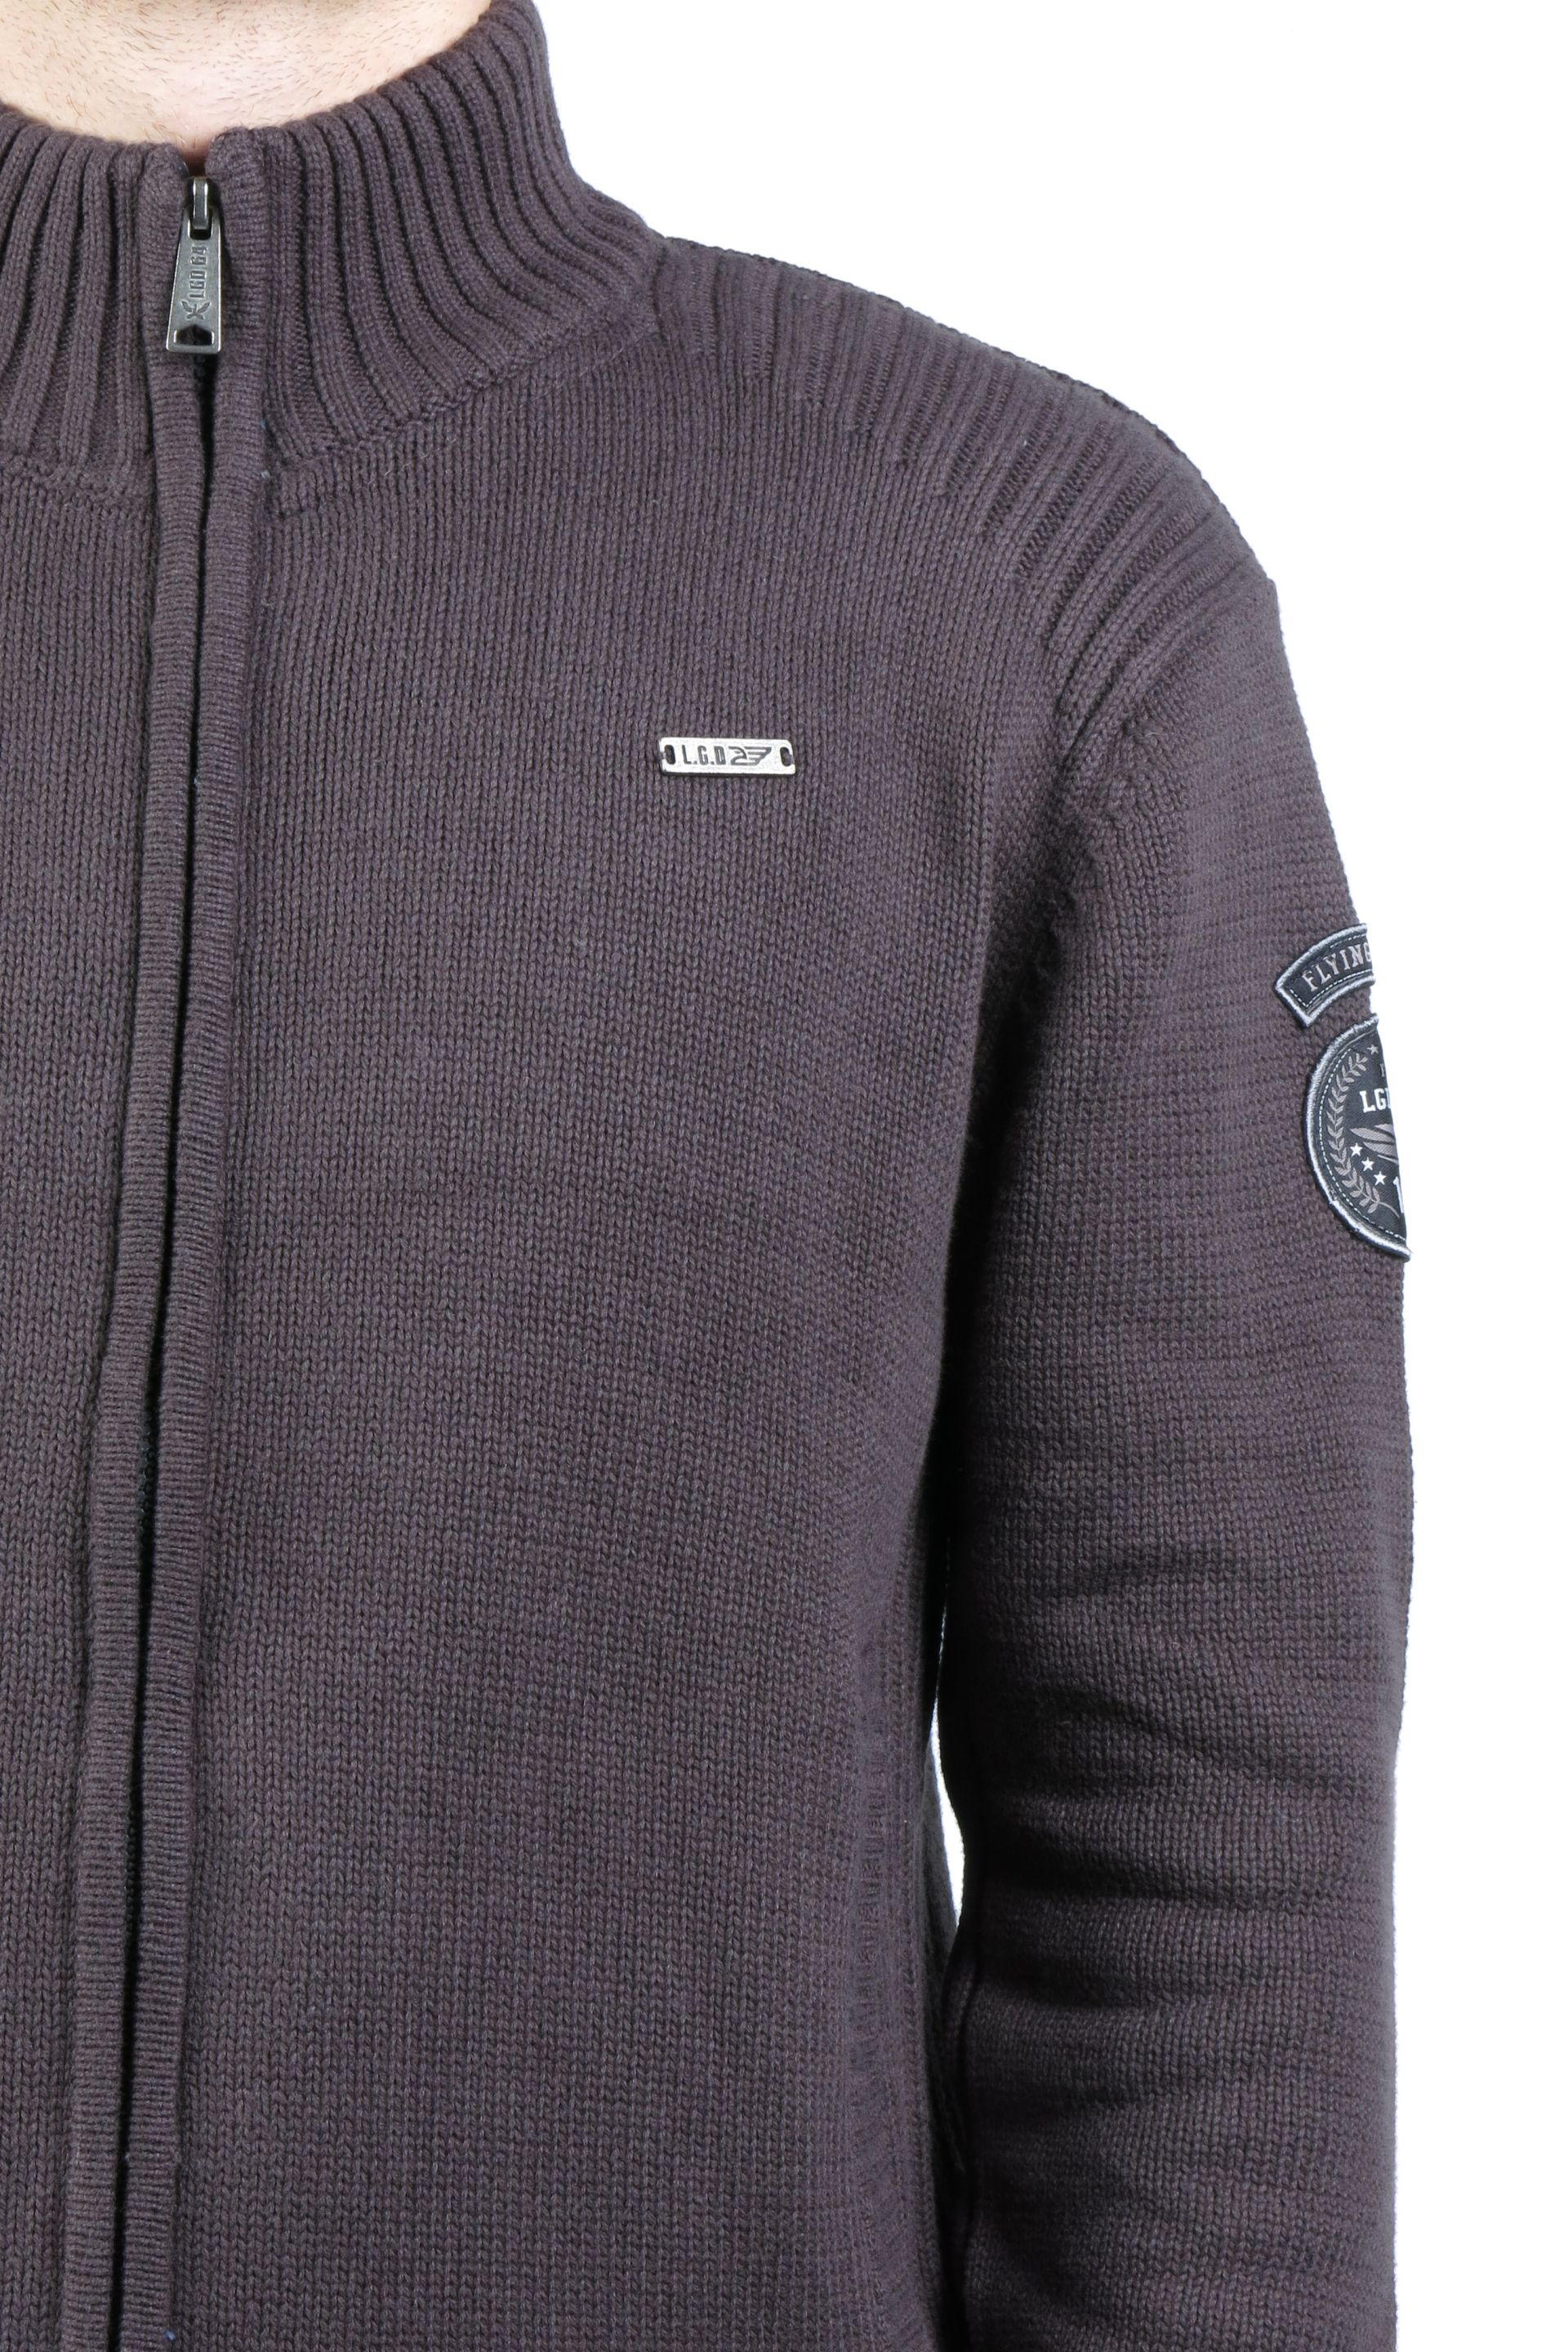 Sweater with zip AERONAUTICAL BENETT-DARK-ANTHRA